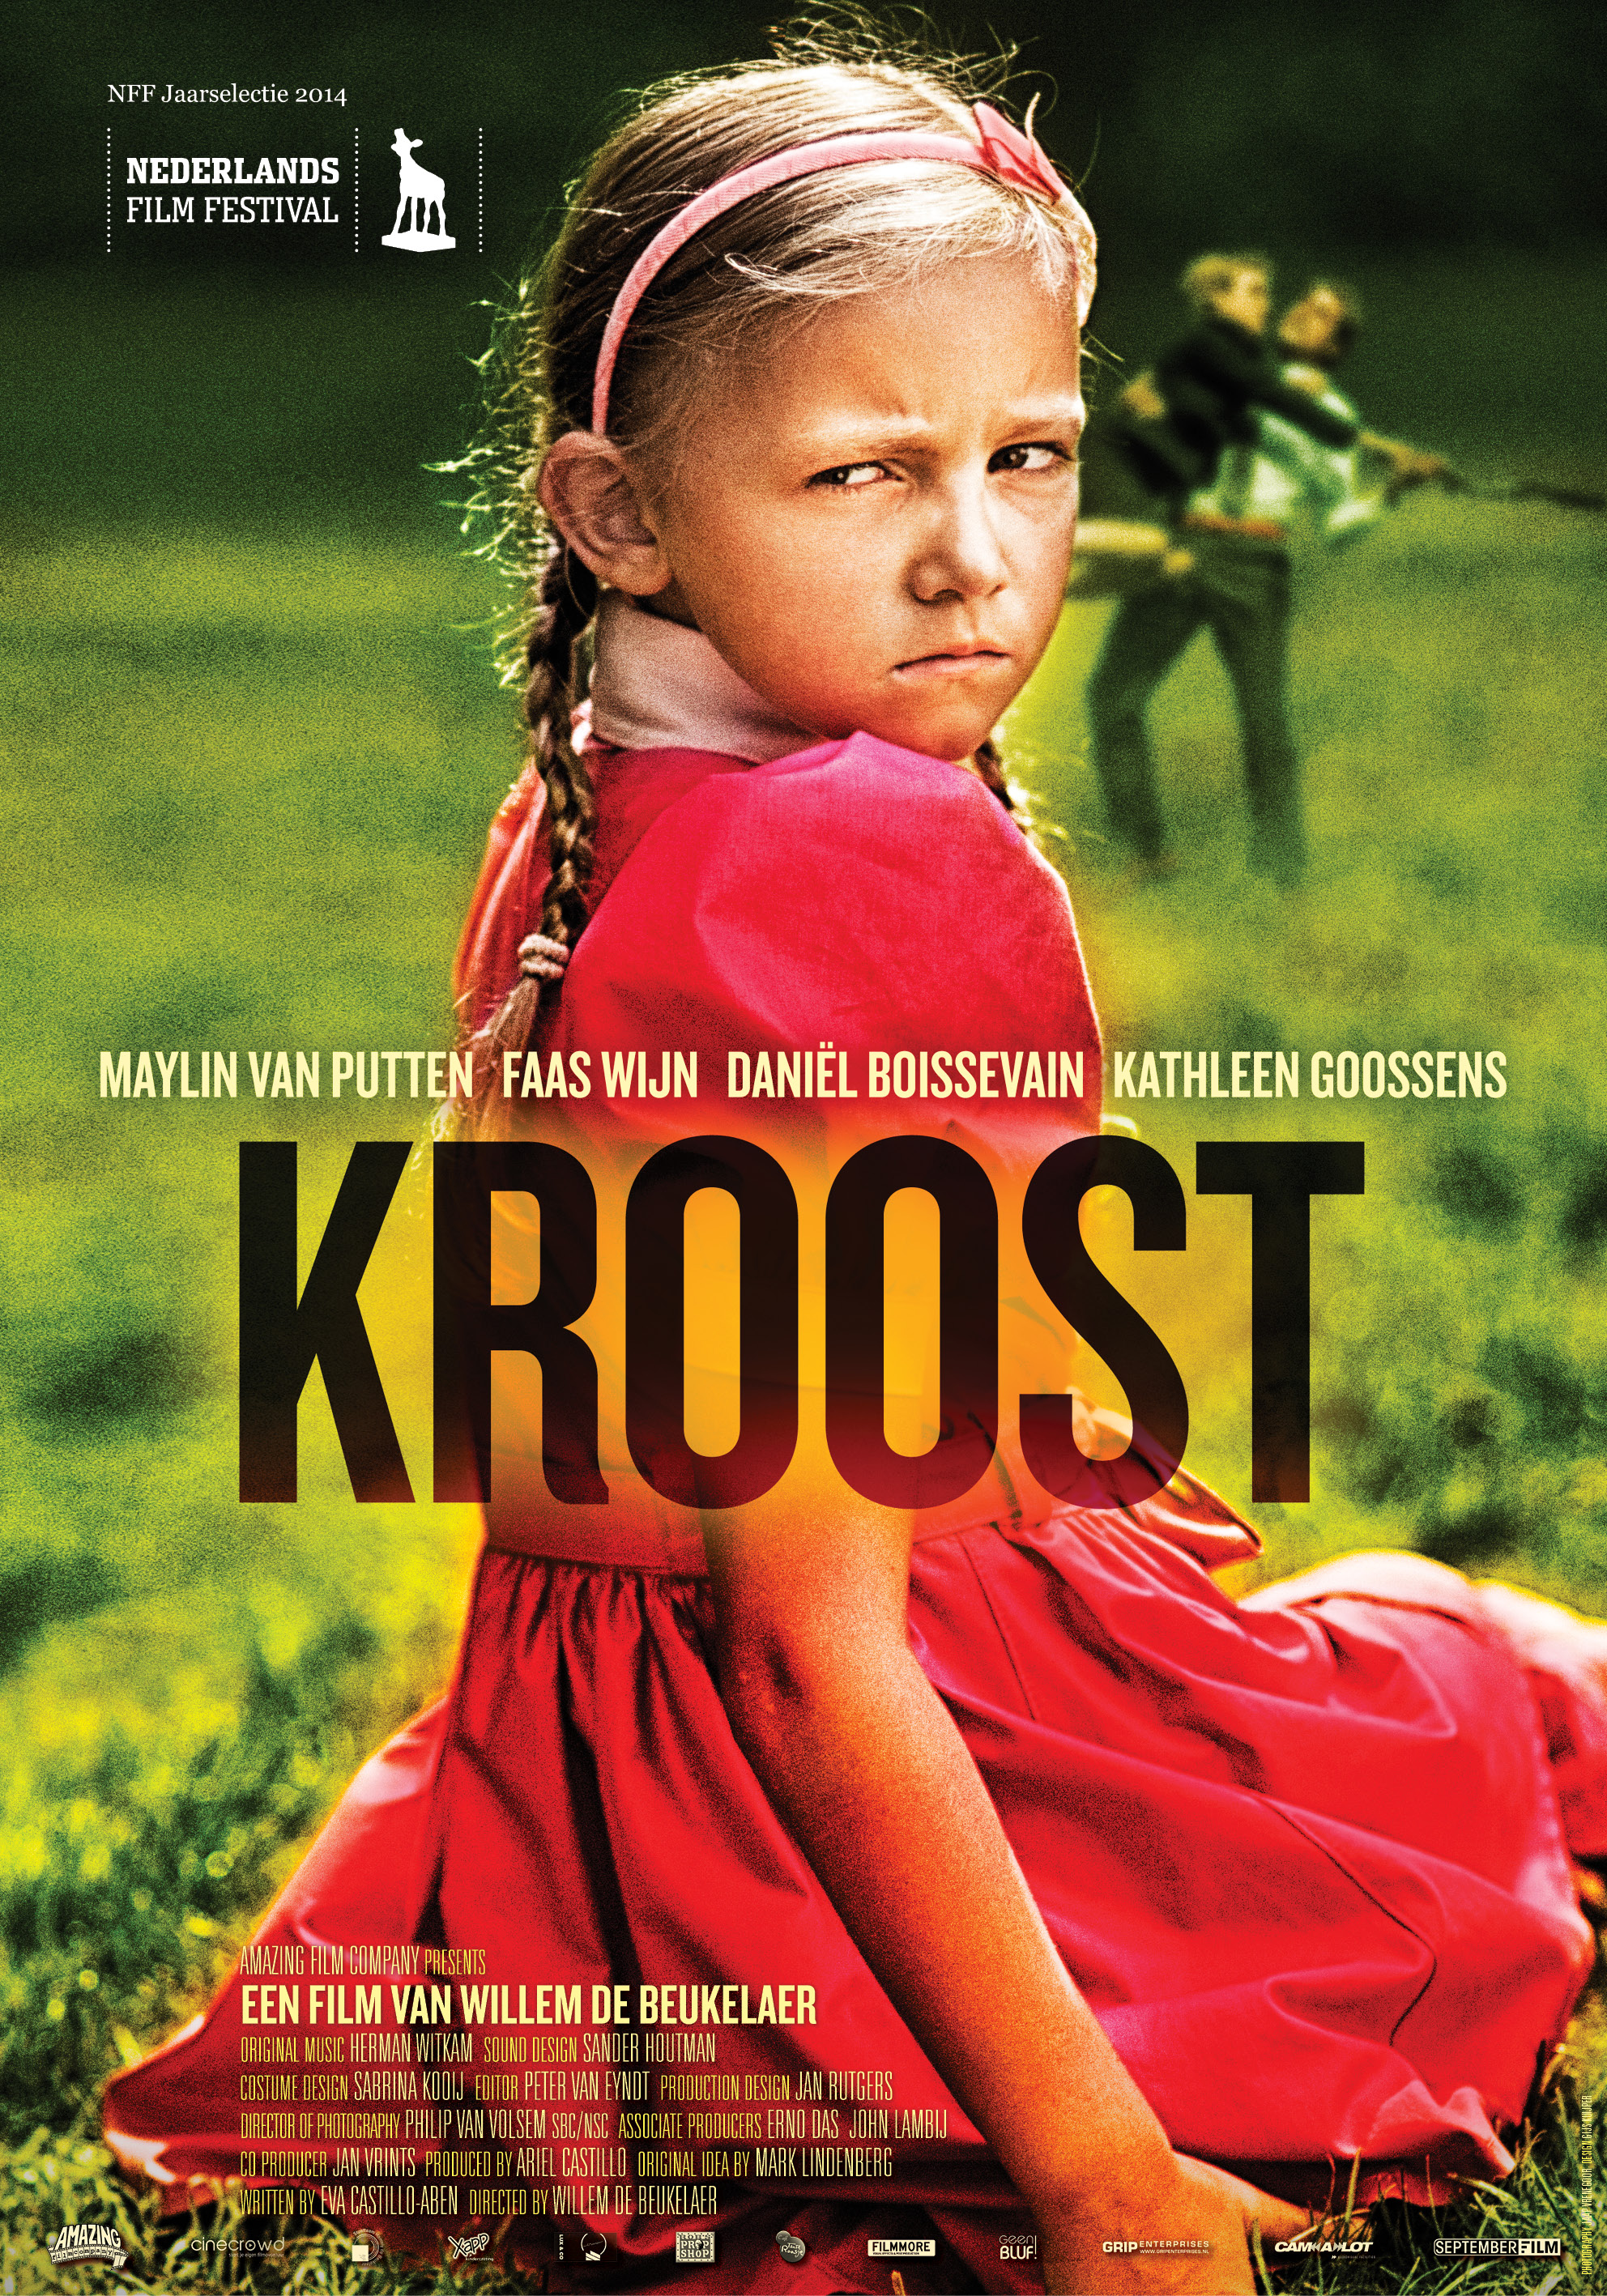 KROOST a short film by Willem de Beukelaer. Written by Eva Castillo-Aben. Produced by Ariel Castillo.